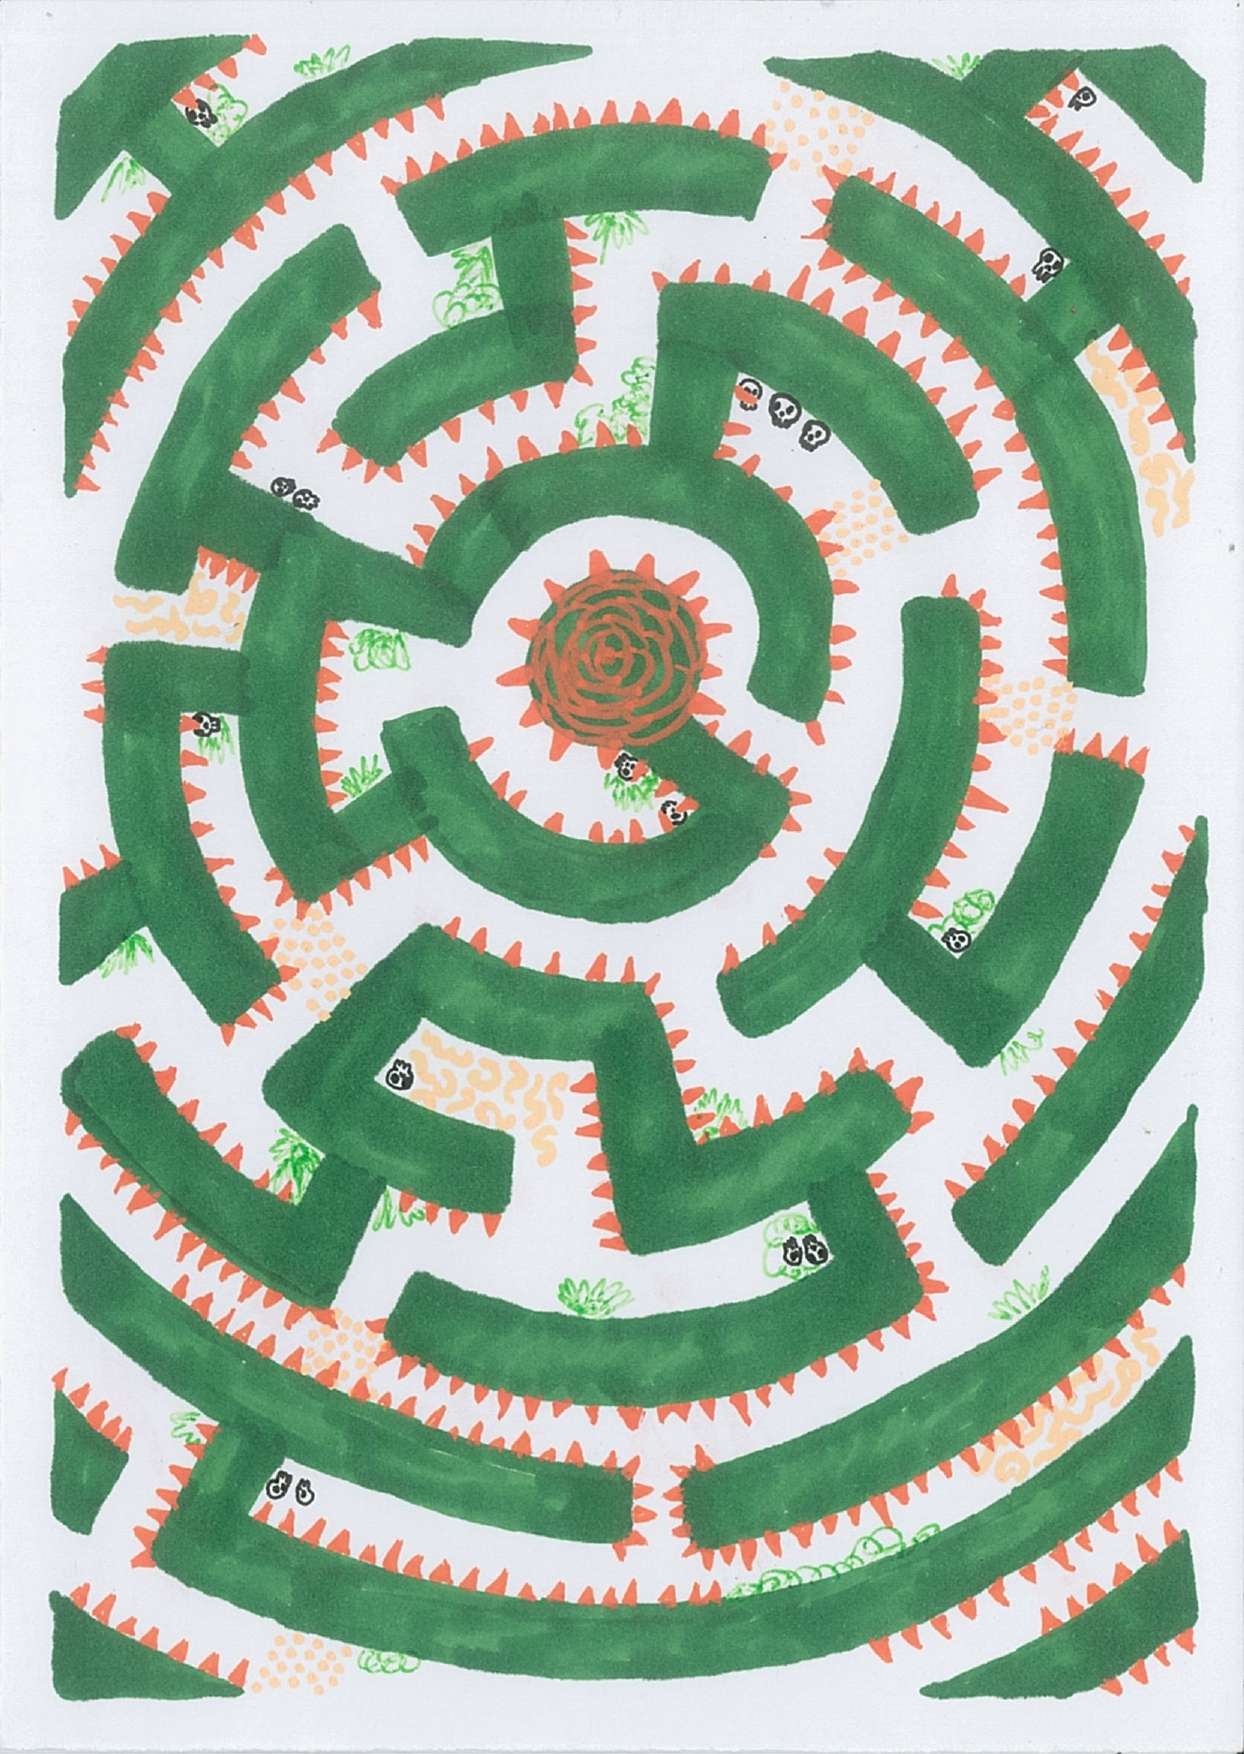 Dessin d'un labyrinthe avec une rose au milieu